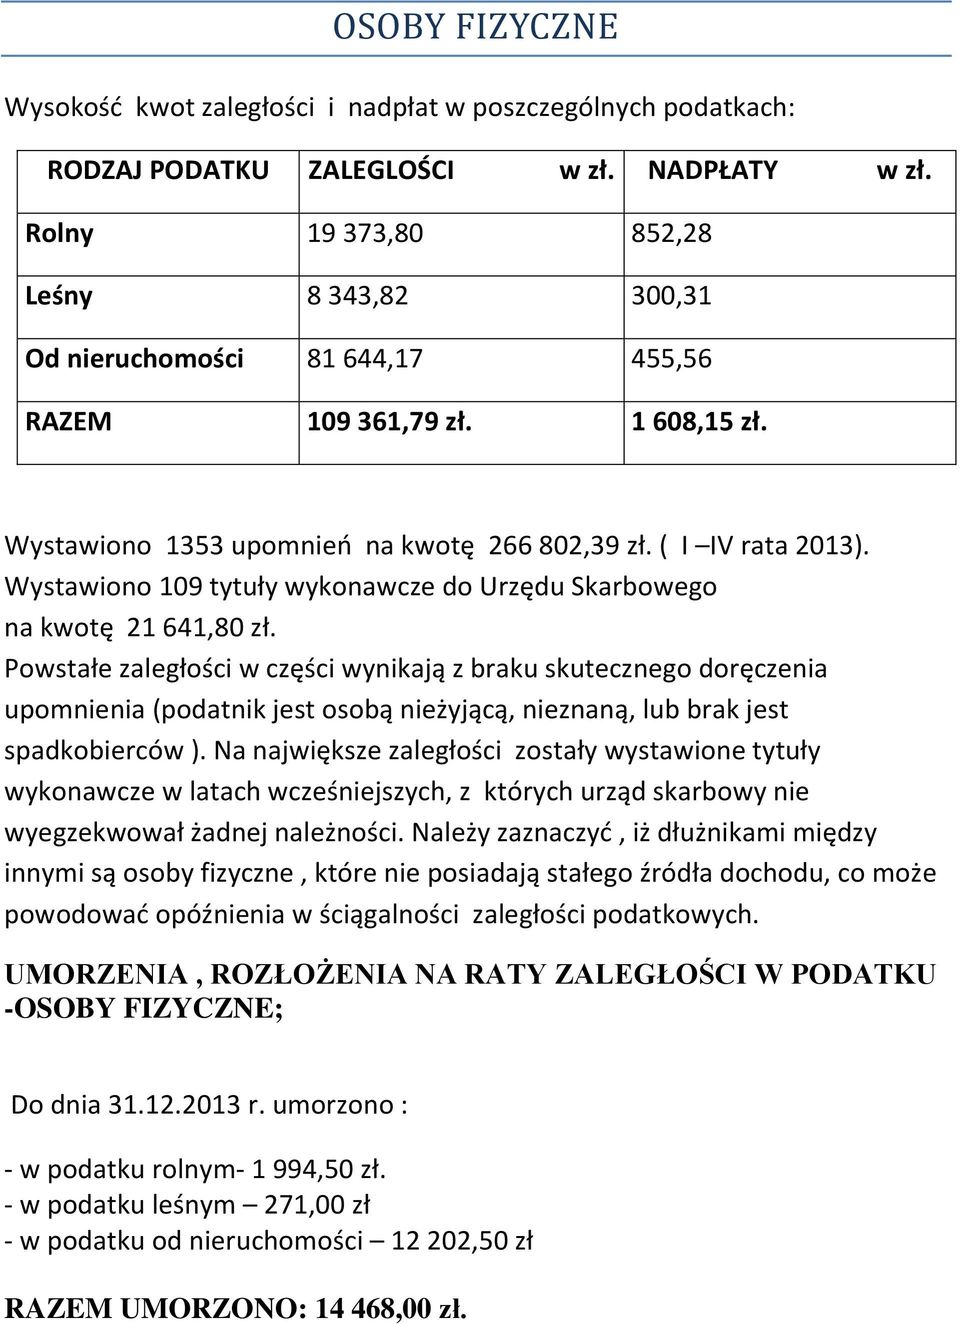 Wystawiono 109 tytuły wykonawcze do Urzędu Skarbowego na kwotę 21 641,80 zł.